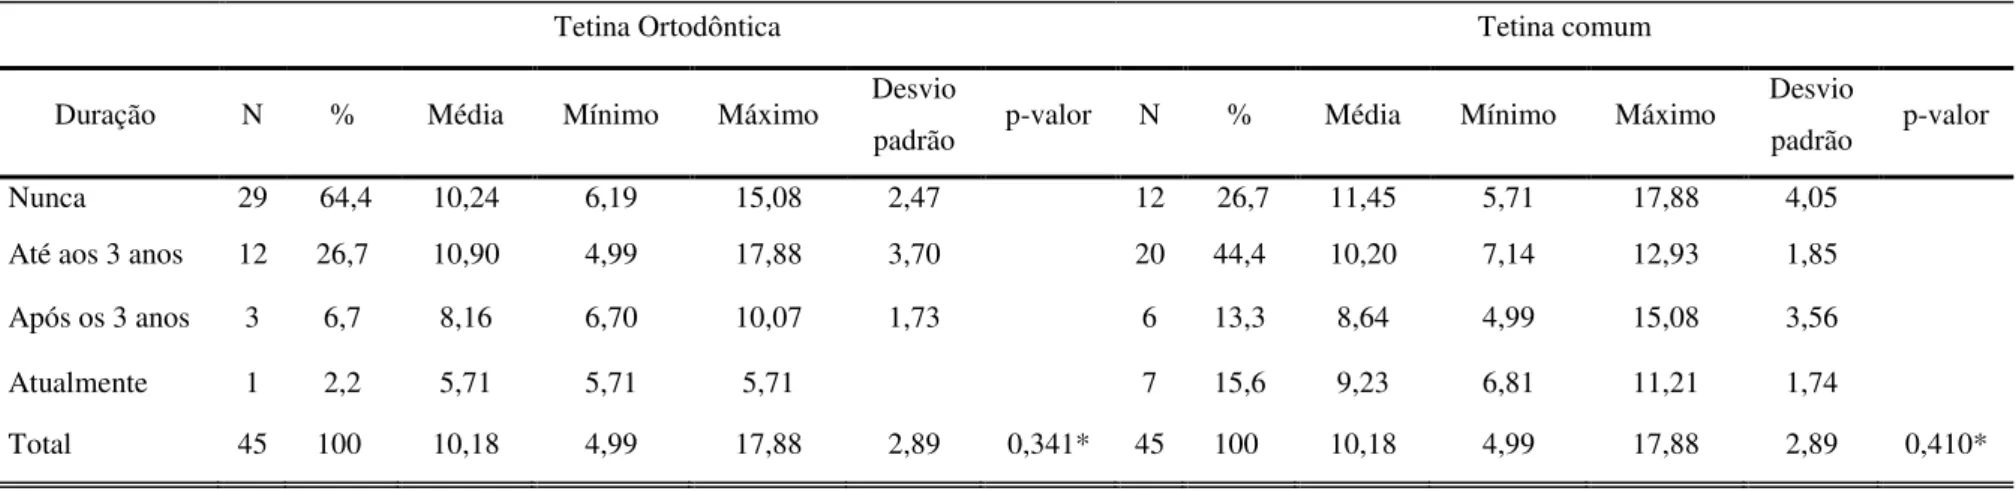 Tabela 11: Níveis de aeração nasal (cm 2 ) em crianças com hábito de sucção de biberão, de acordo com o tipo de tetina e duração do hábito 